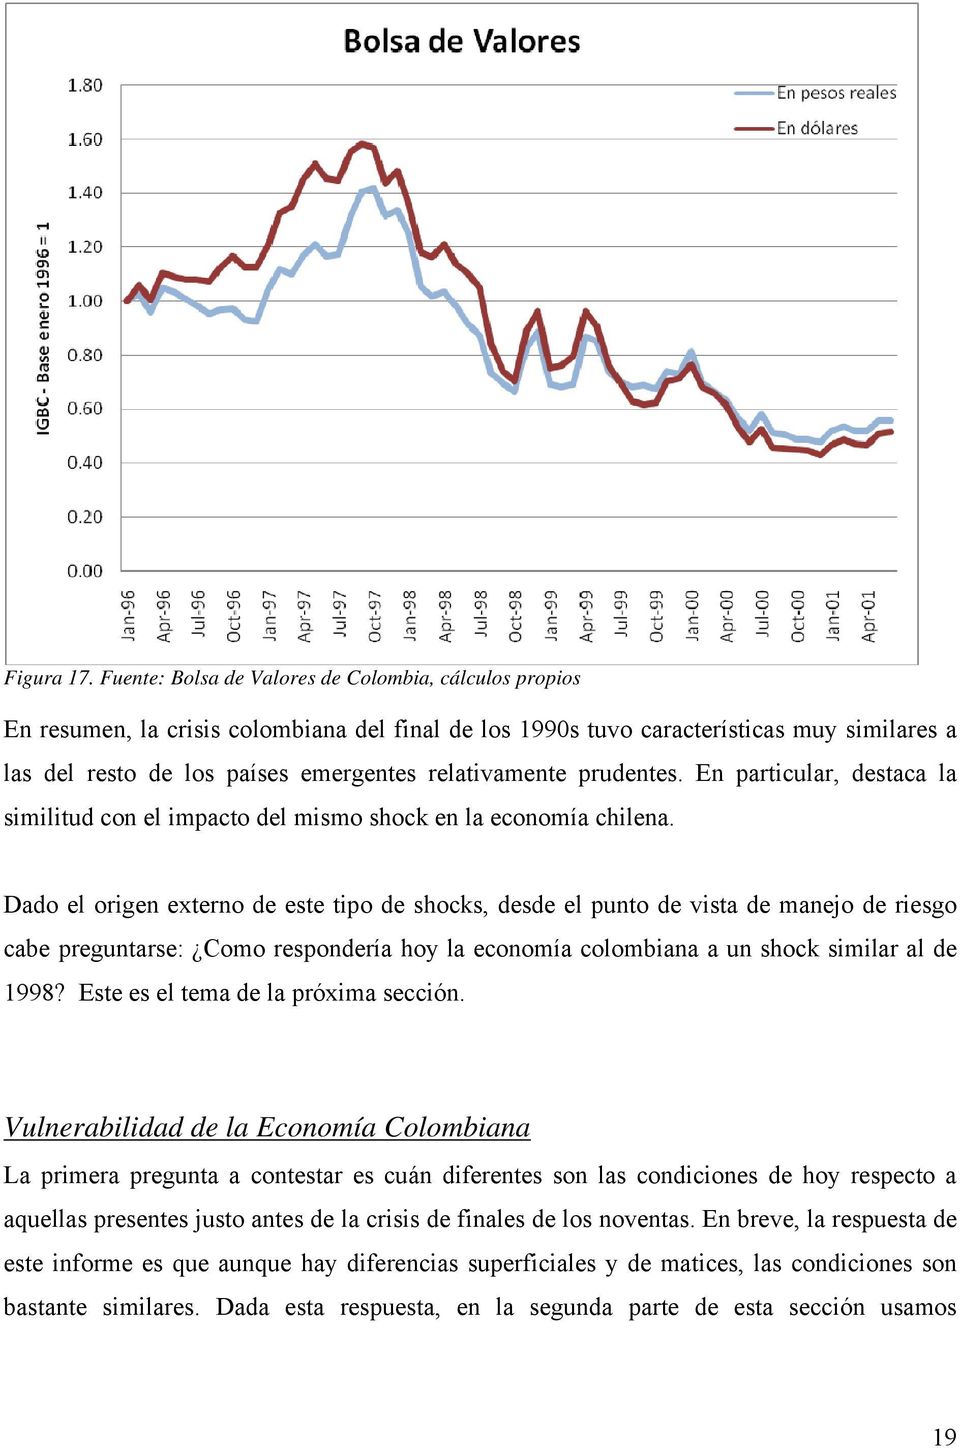 prudenes. En paricular, desaca la similiud con el impaco del mismo shock en la economía chilena.